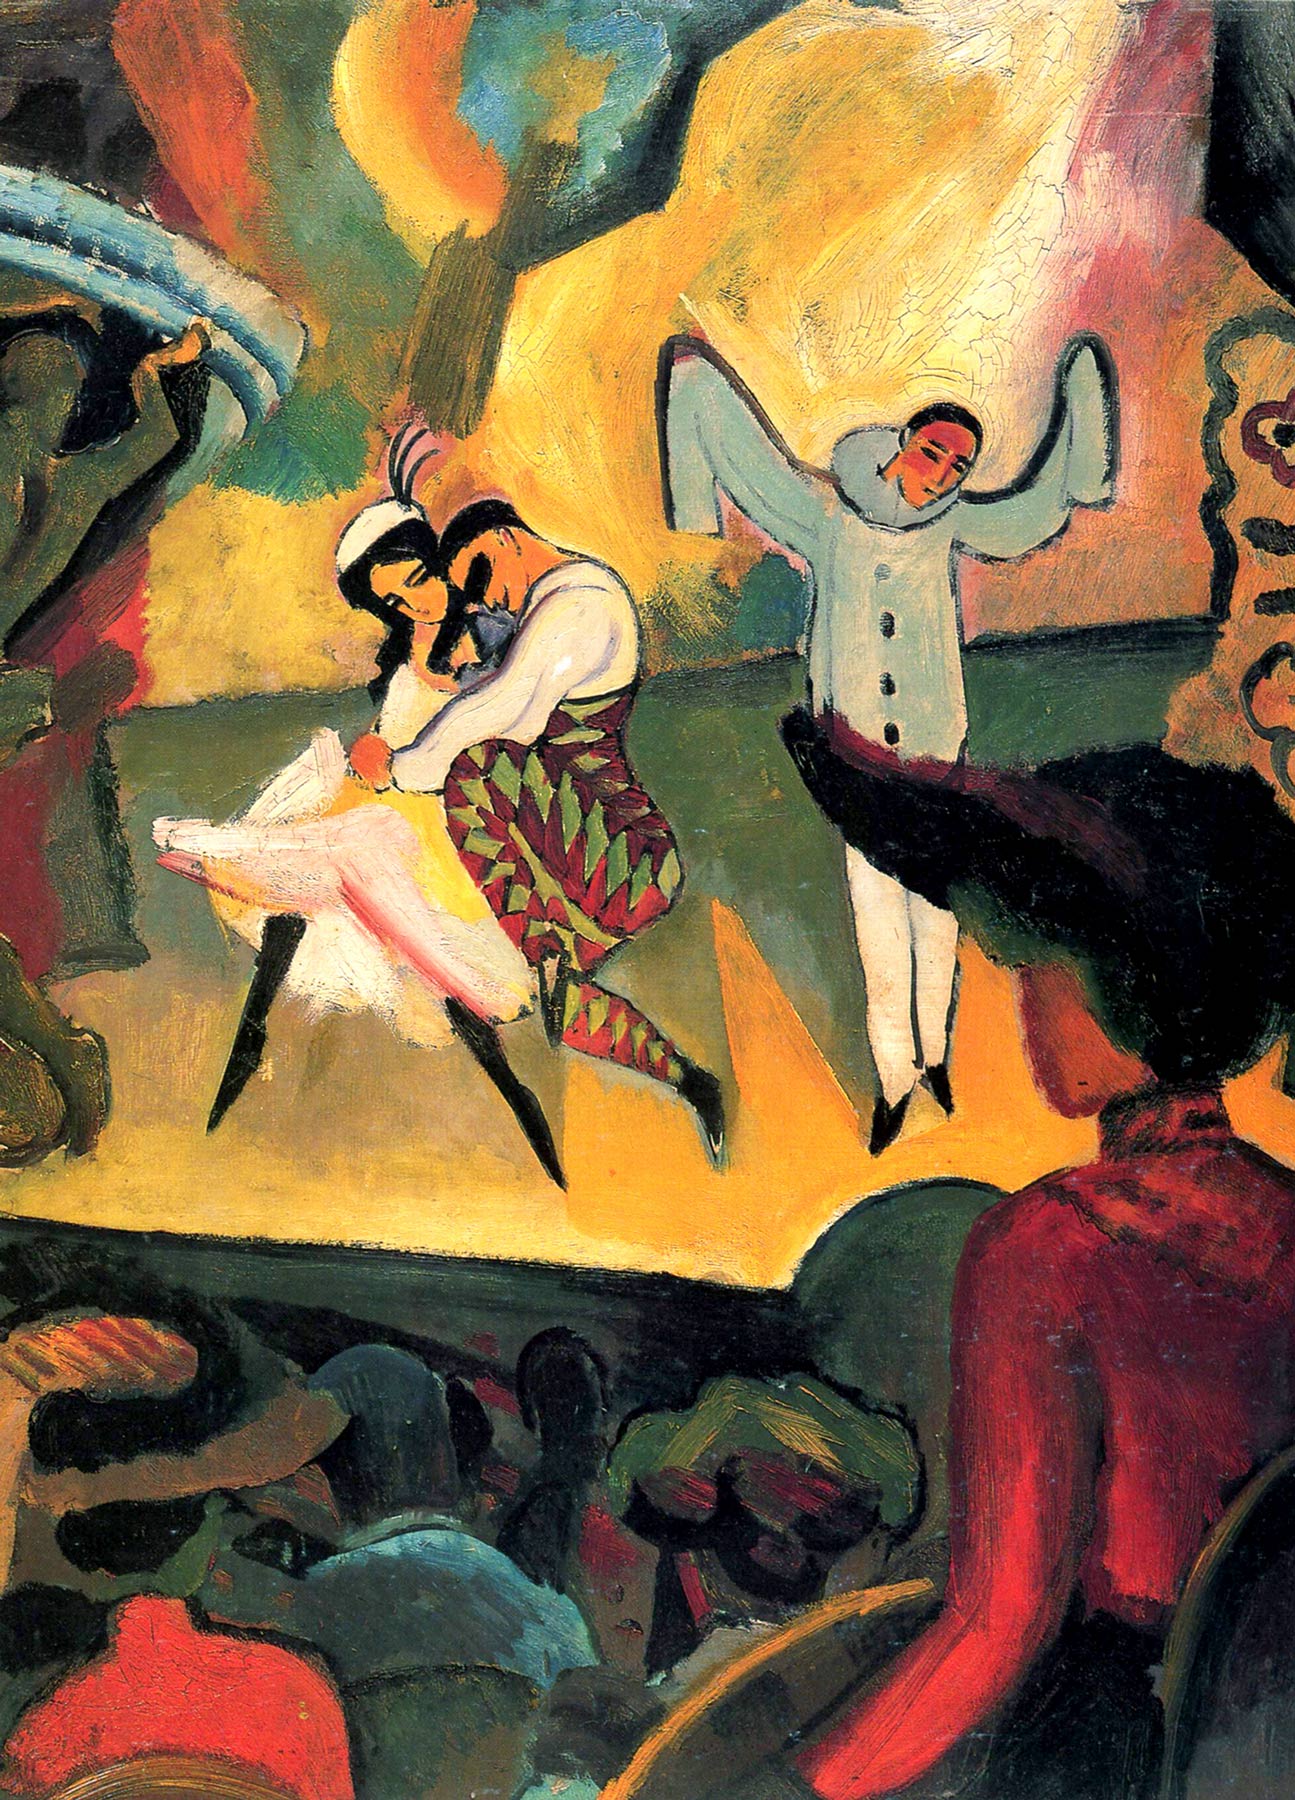 俄國芭蕾 I by August Macke - 1912 - 103.0 x 81.0 厘米 